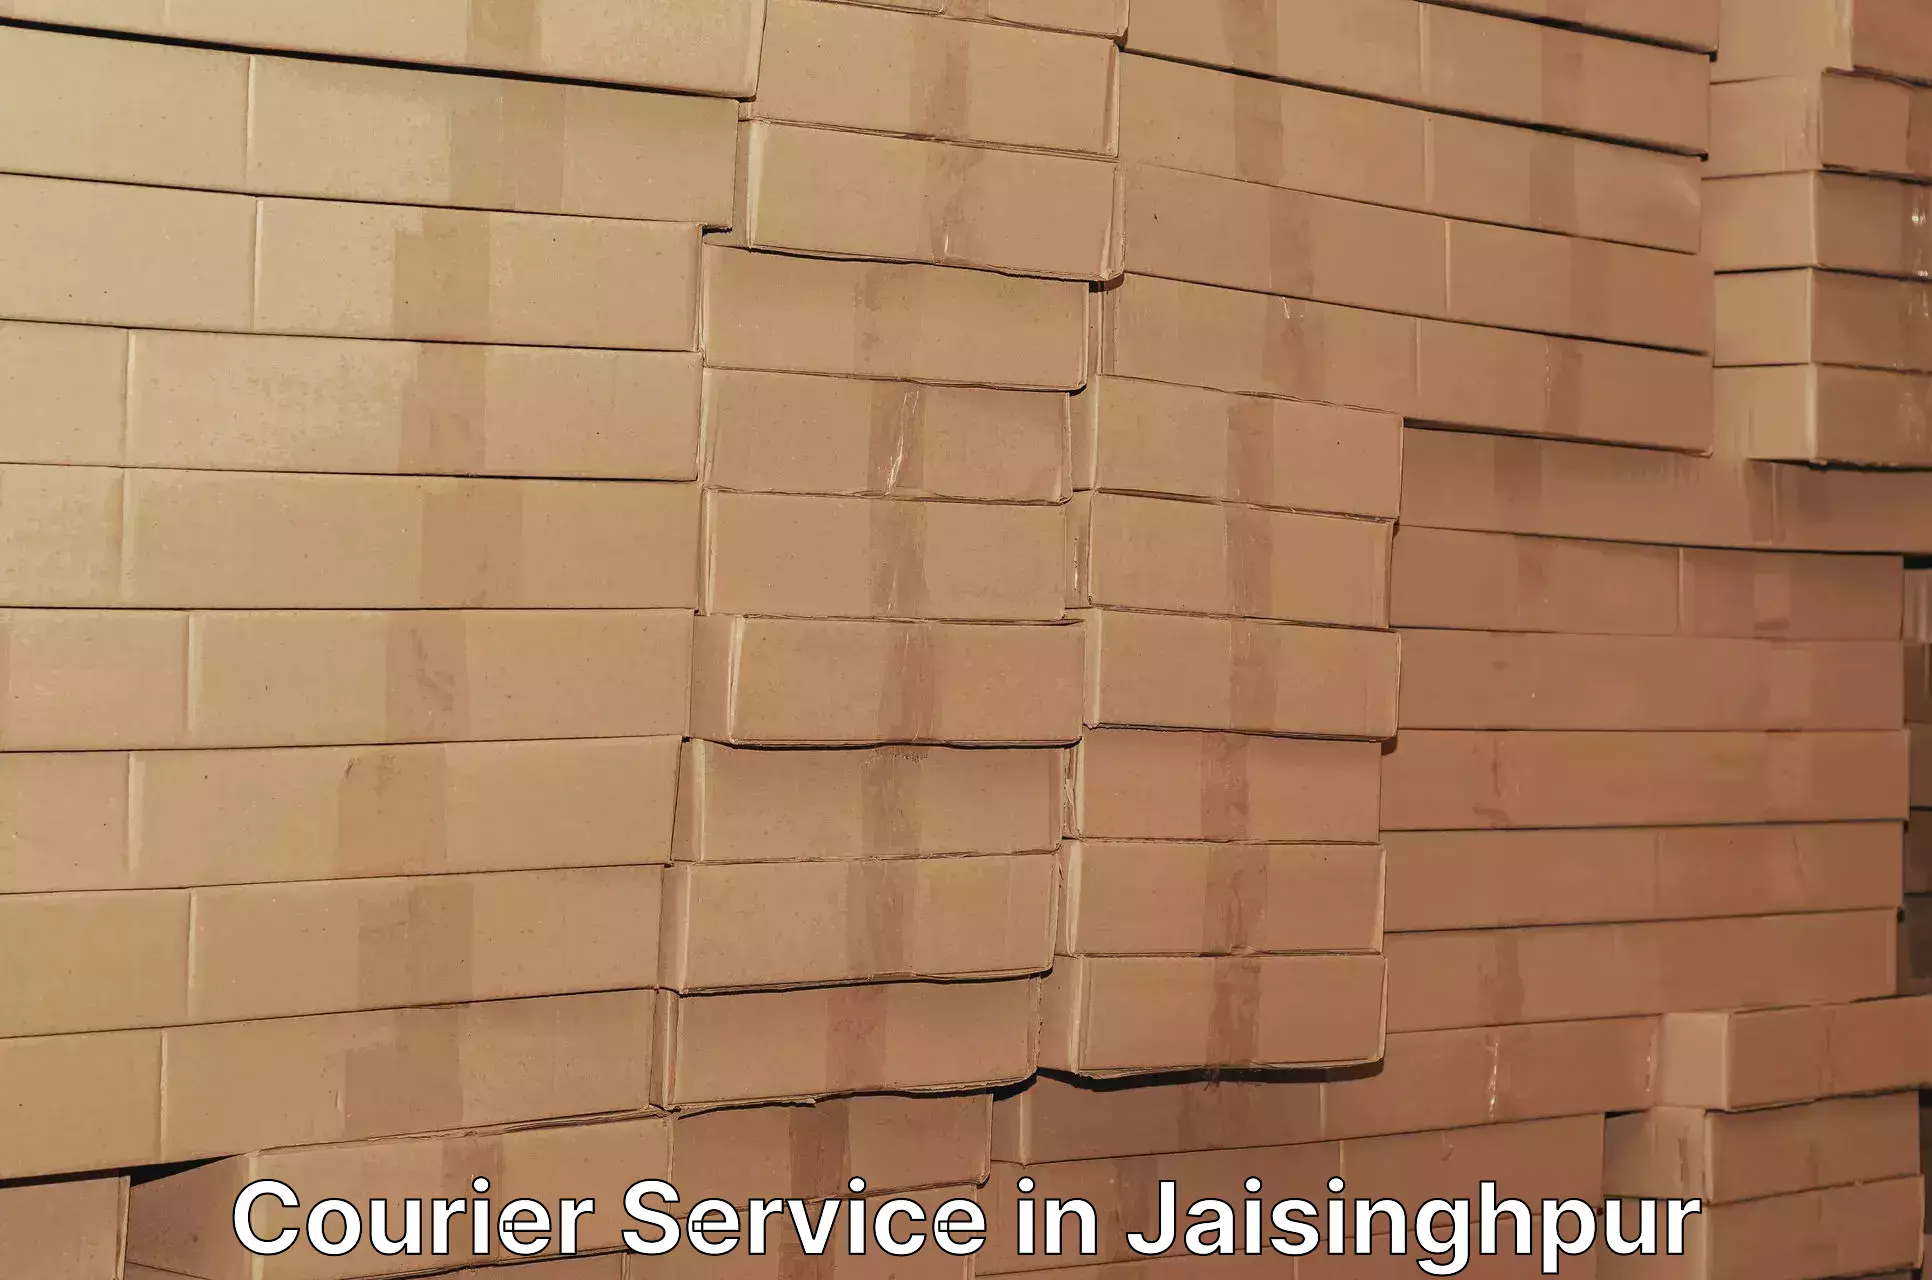 Digital shipping tools in Jaisinghpur